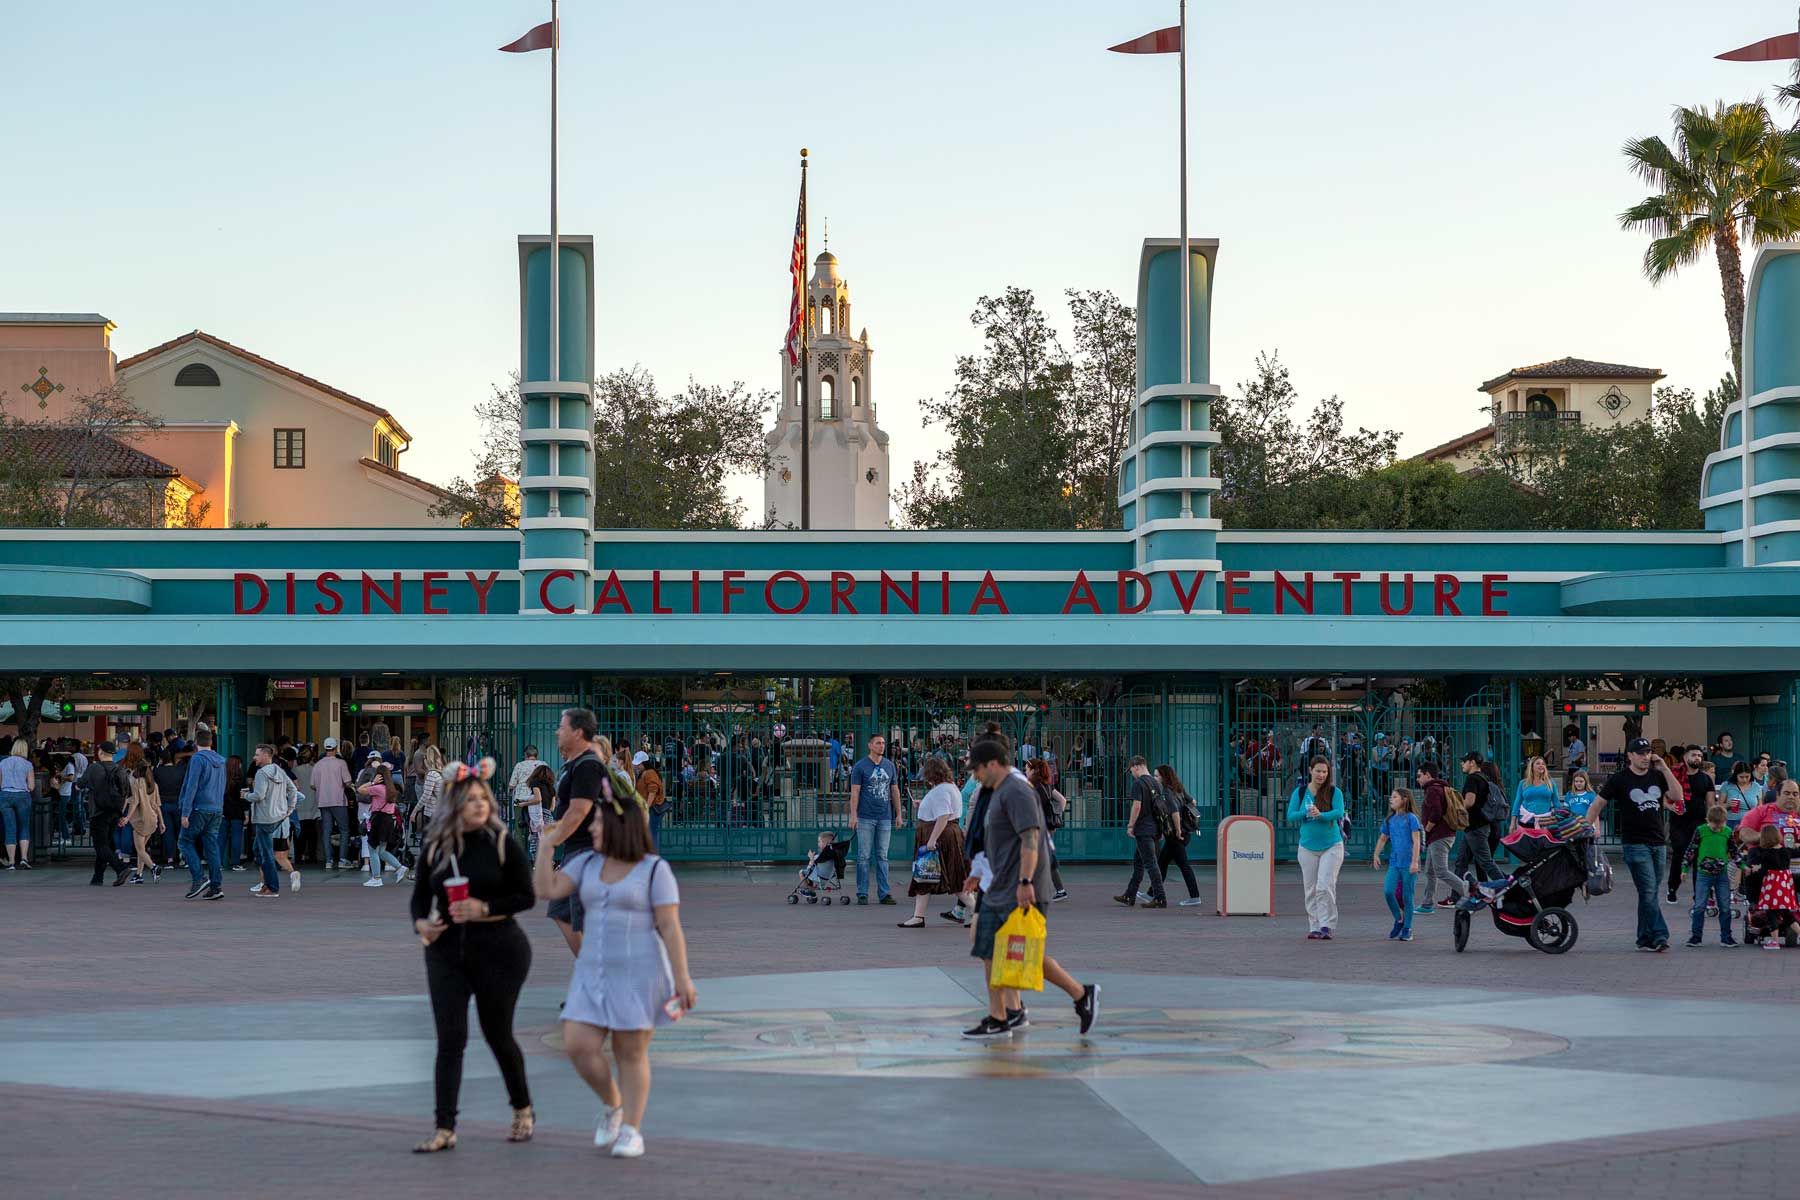 I visitatori assistenu à u parc temàticu Disney California Adventure u 25 di frivaghju 2020 in Anaheim, California. Bob Iger, chì era CEO di Disney dapoi u 2005, hè statu rimpiazzatu da Bob Chapek, chì prima dirigia a cumpagnia